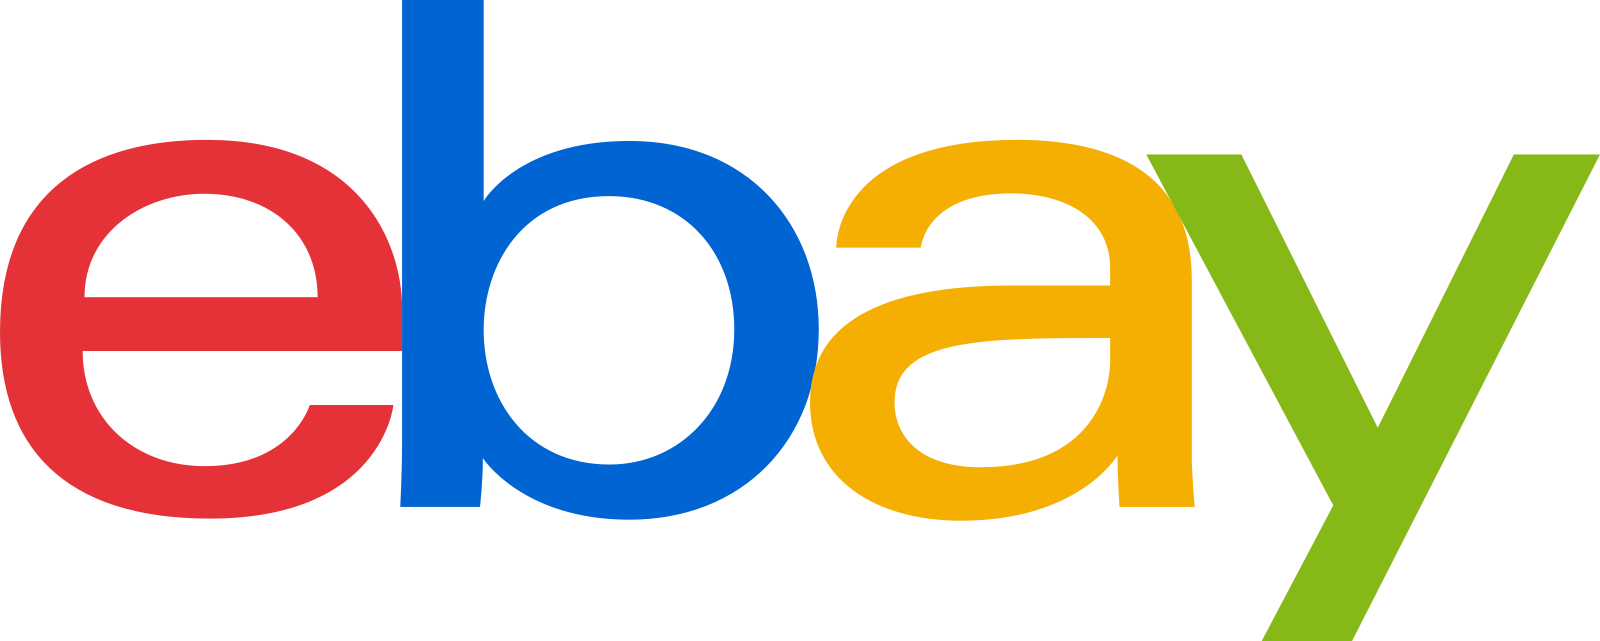 ebay logo 2 - eBay Logo